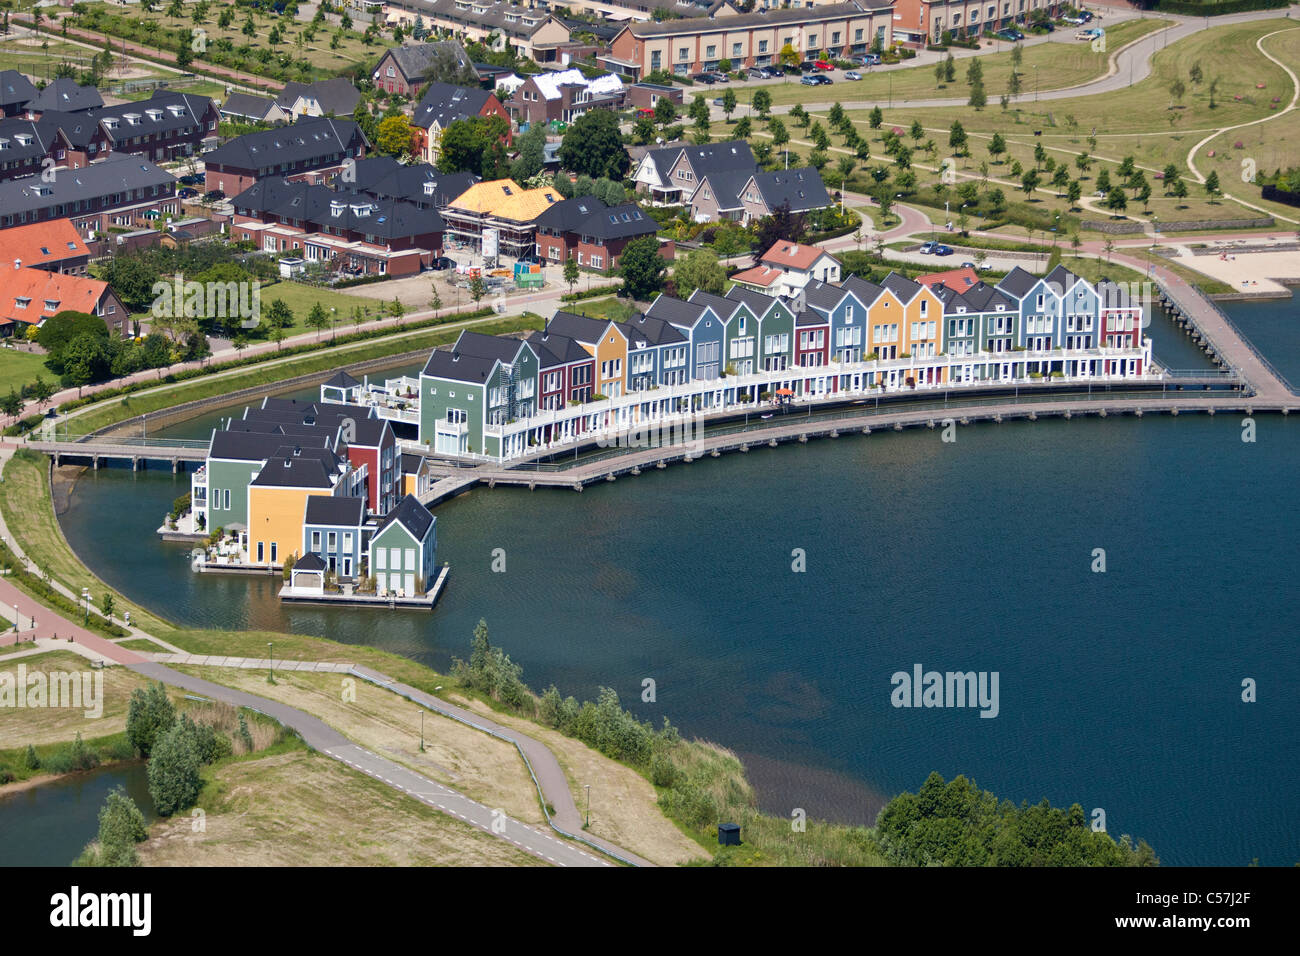 Holanda, Houten, moderno distrito residencial. Antena. Villas de agua. Foto de stock